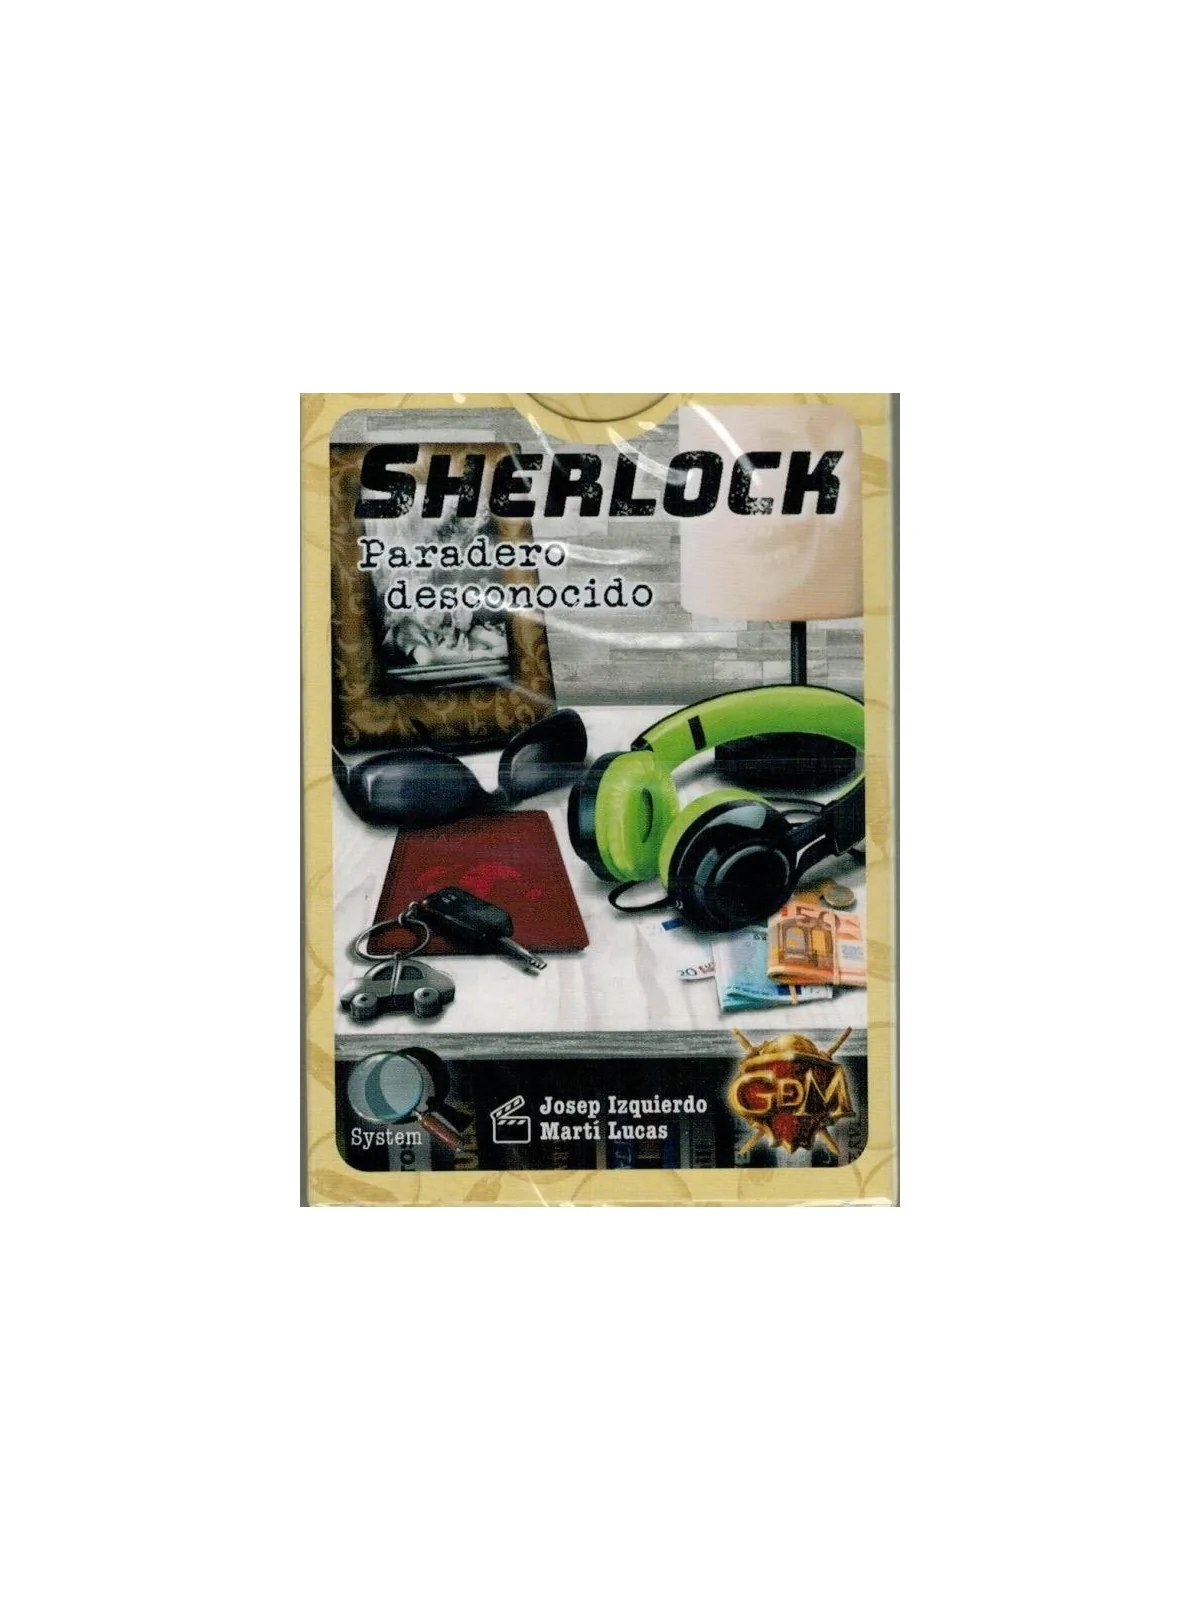 Comprar Sherlock Q2: Paradero Desconocido barato al mejor precio 7,51 